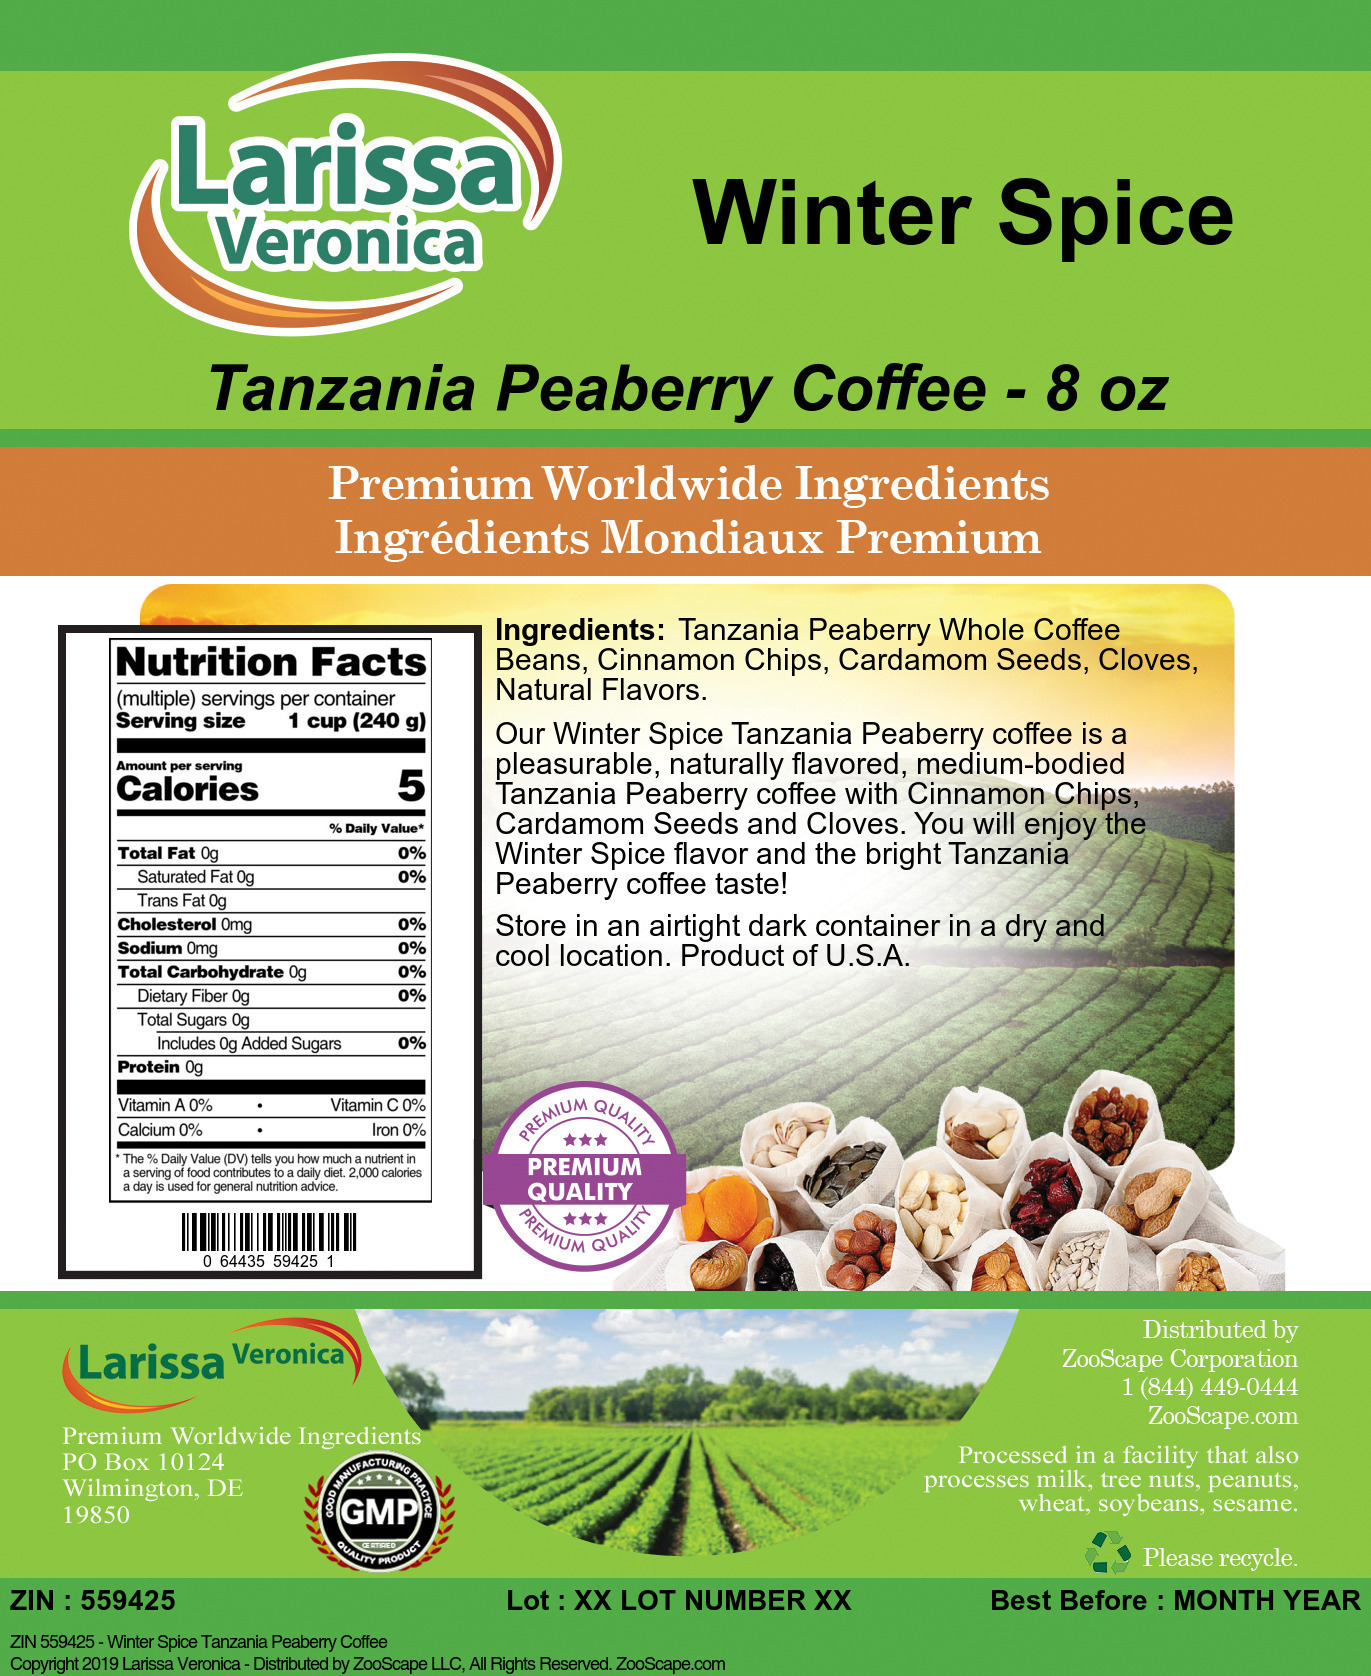 Winter Spice Tanzania Peaberry Coffee - Label